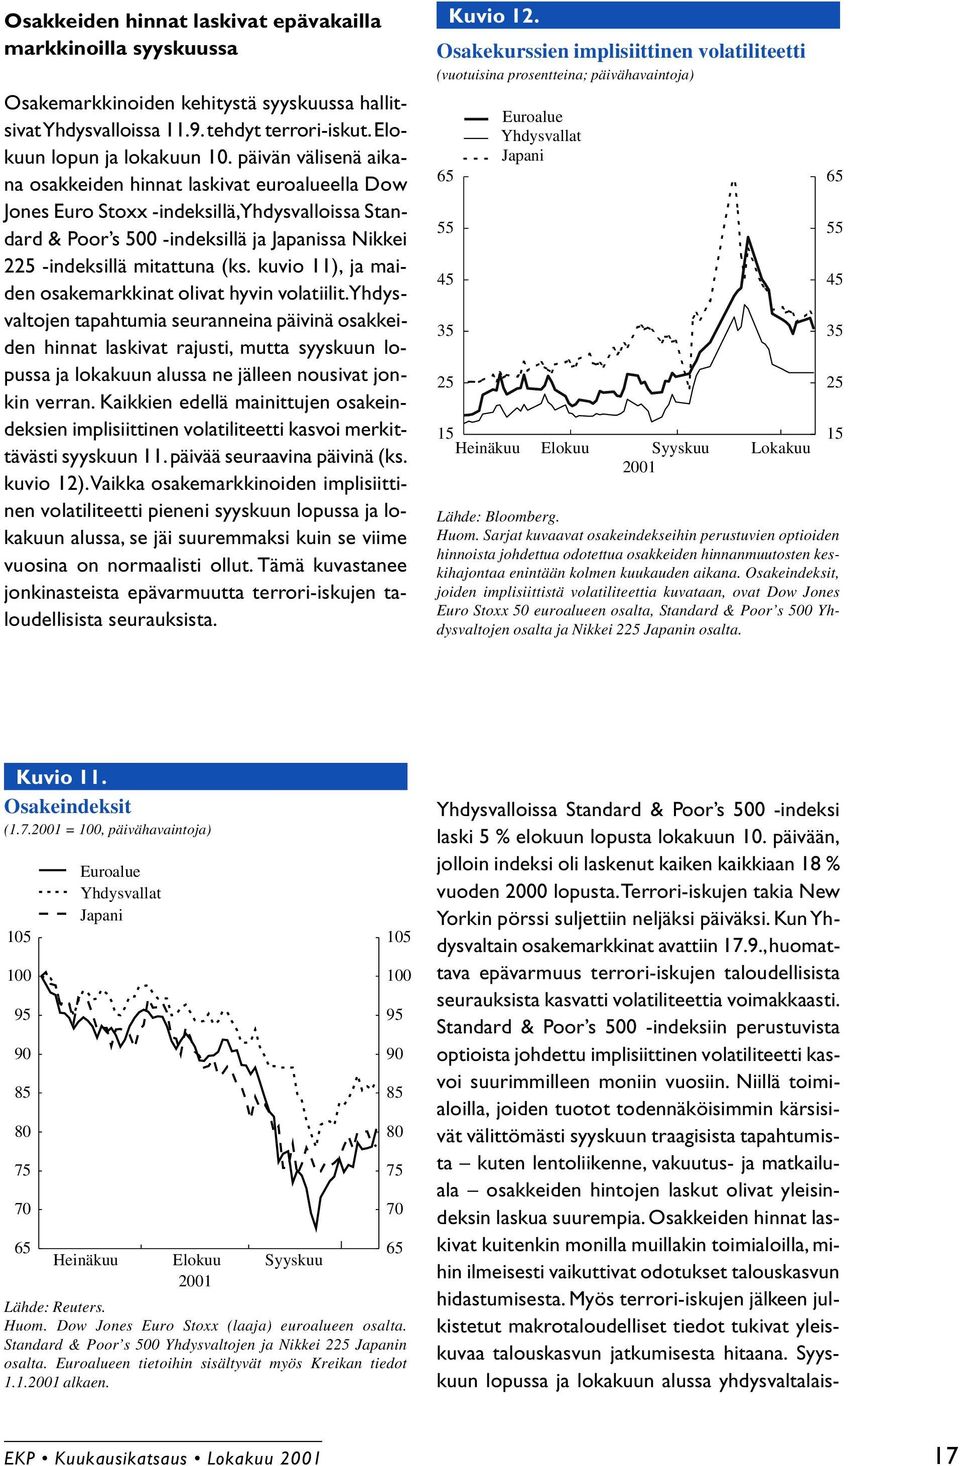 kuvio 11), ja maiden osakemarkkinat olivat hyvin volatiilit.